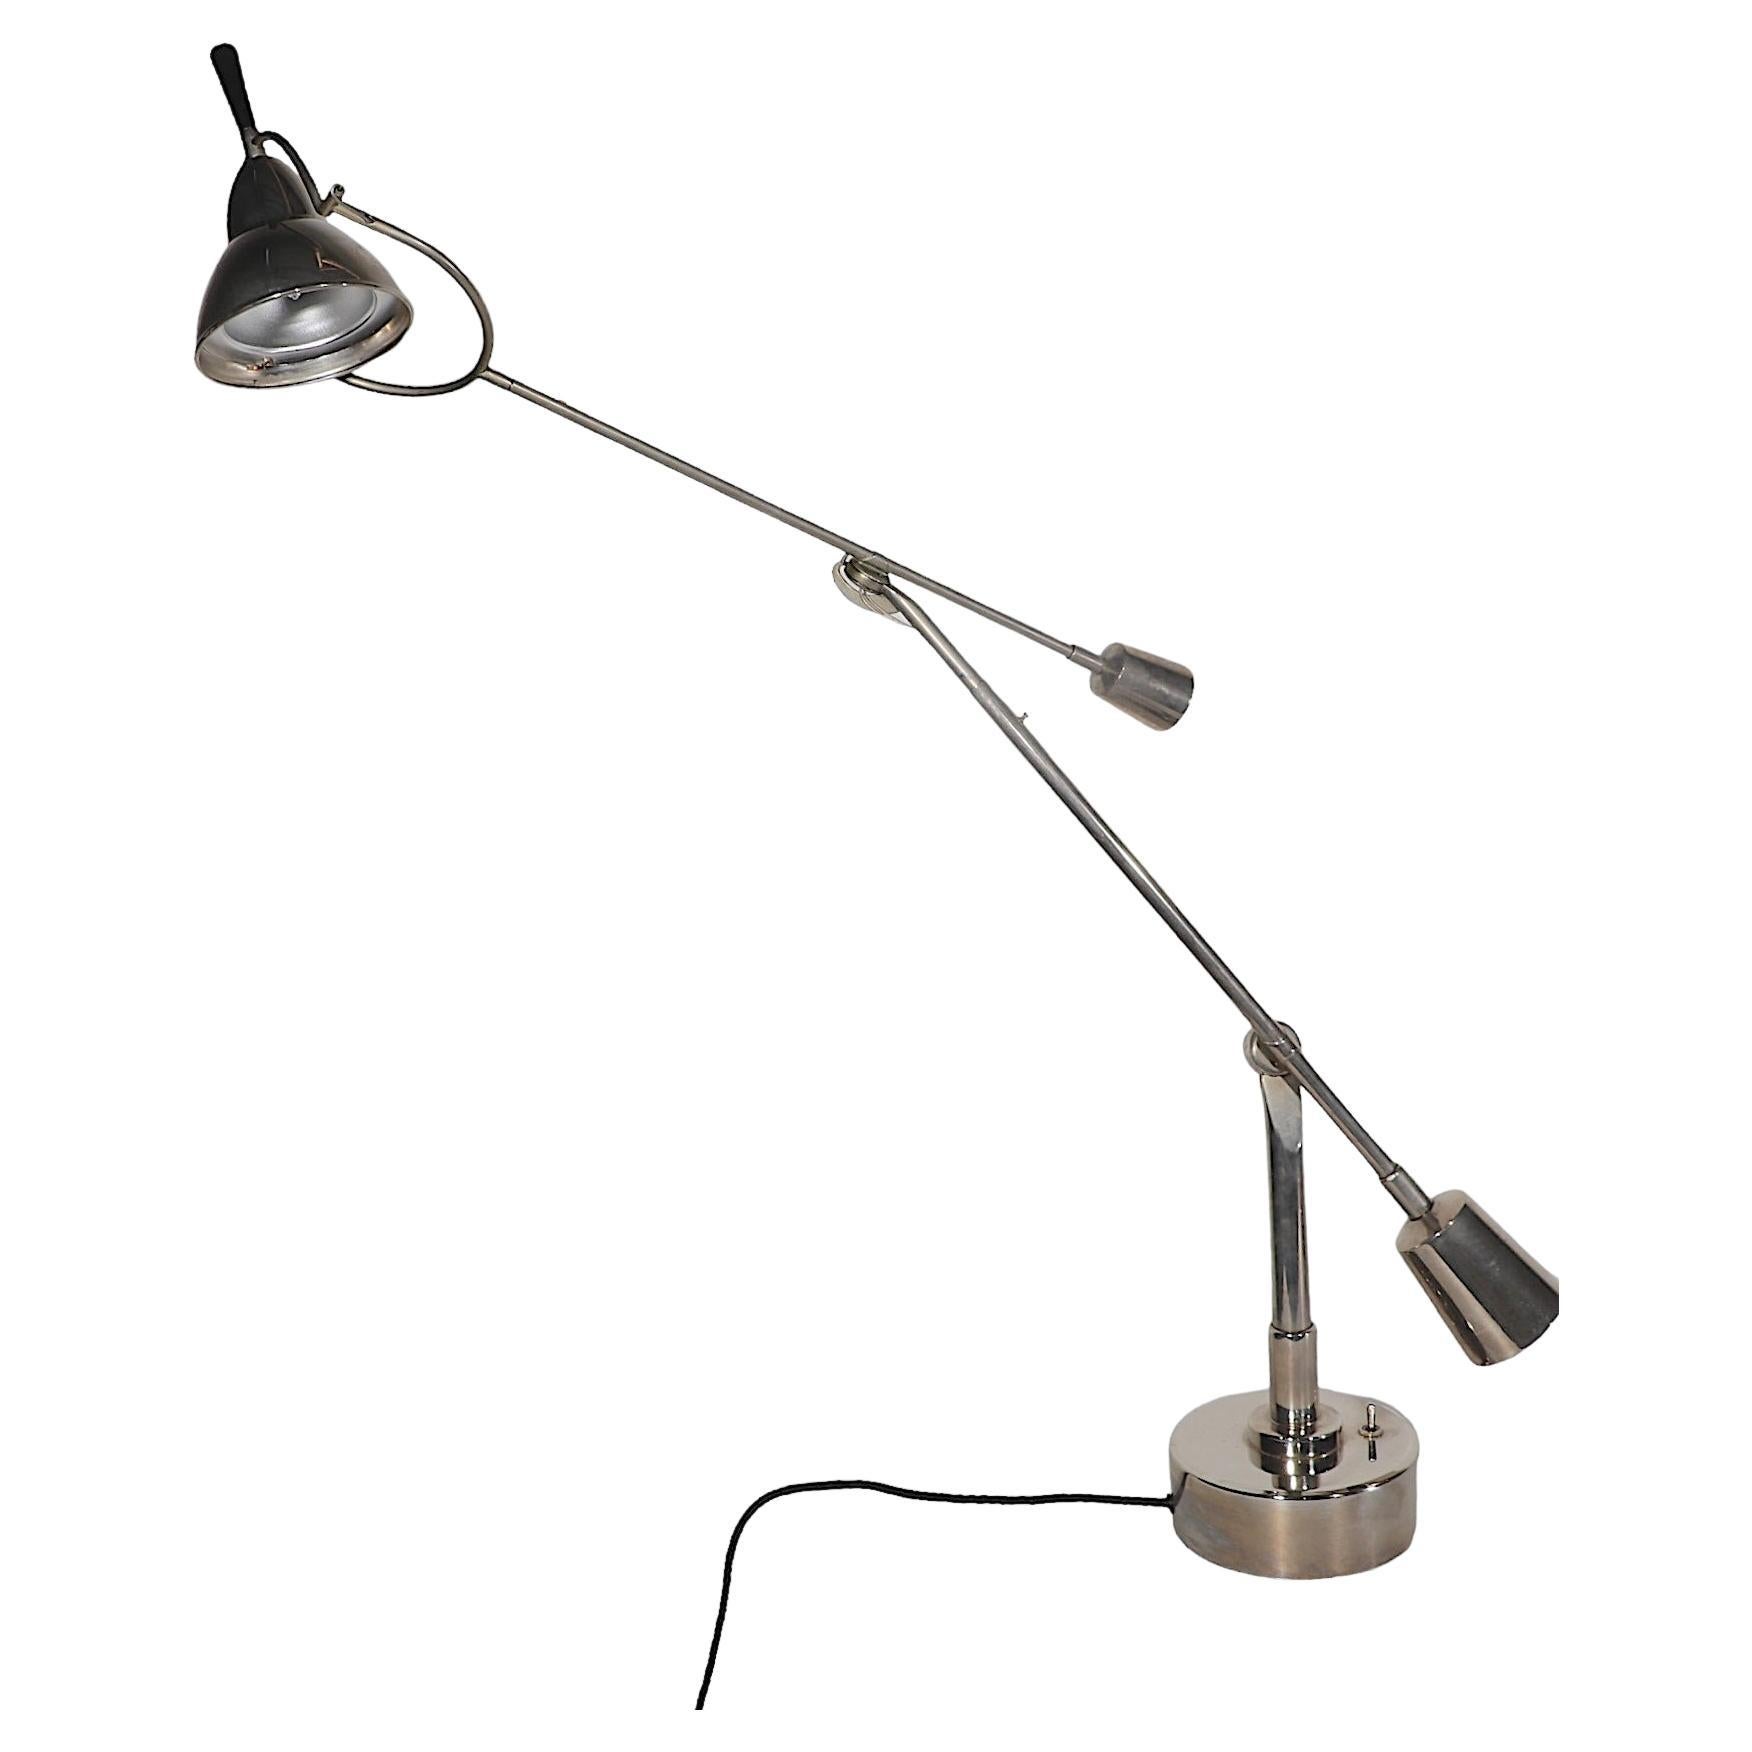 Lampe de bureau articulée EB 27 Angle Poise conçue par Buquet, vers 1990